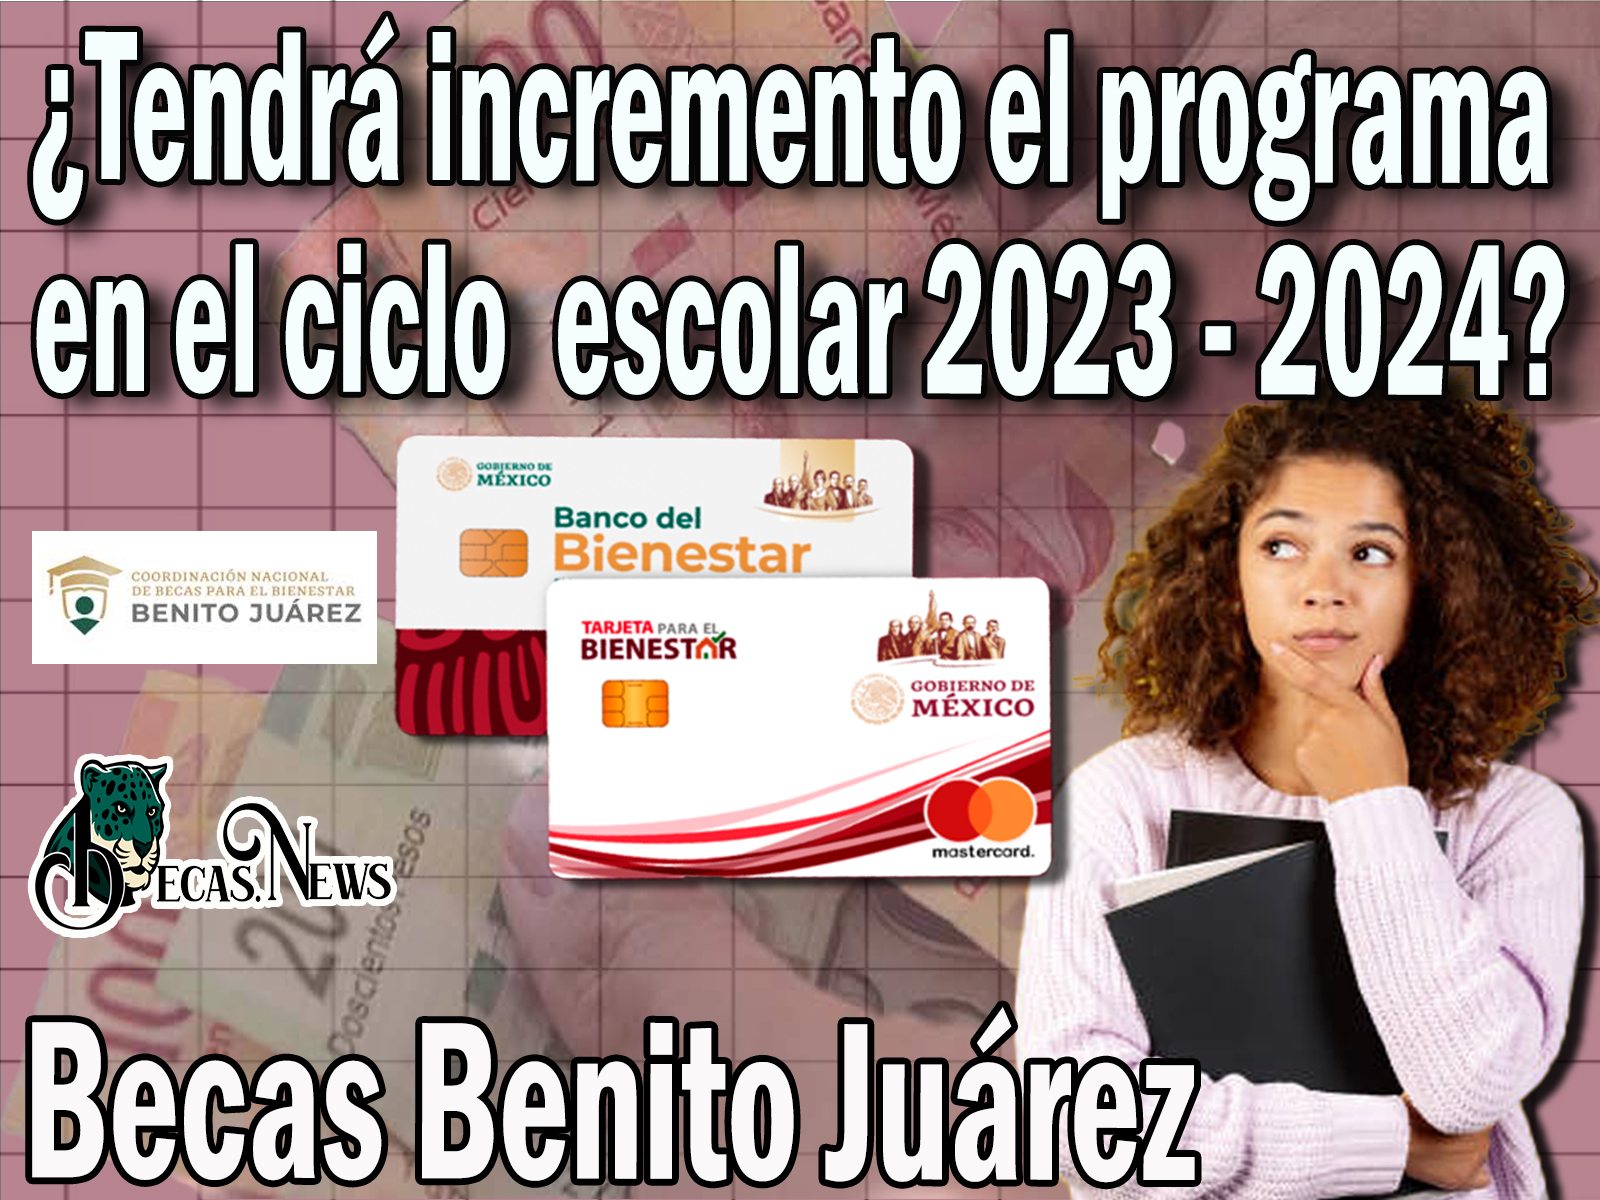 Becas Benito Juárez: ¿Tendrá incremento en el ciclo escolar 2023 - 2024?